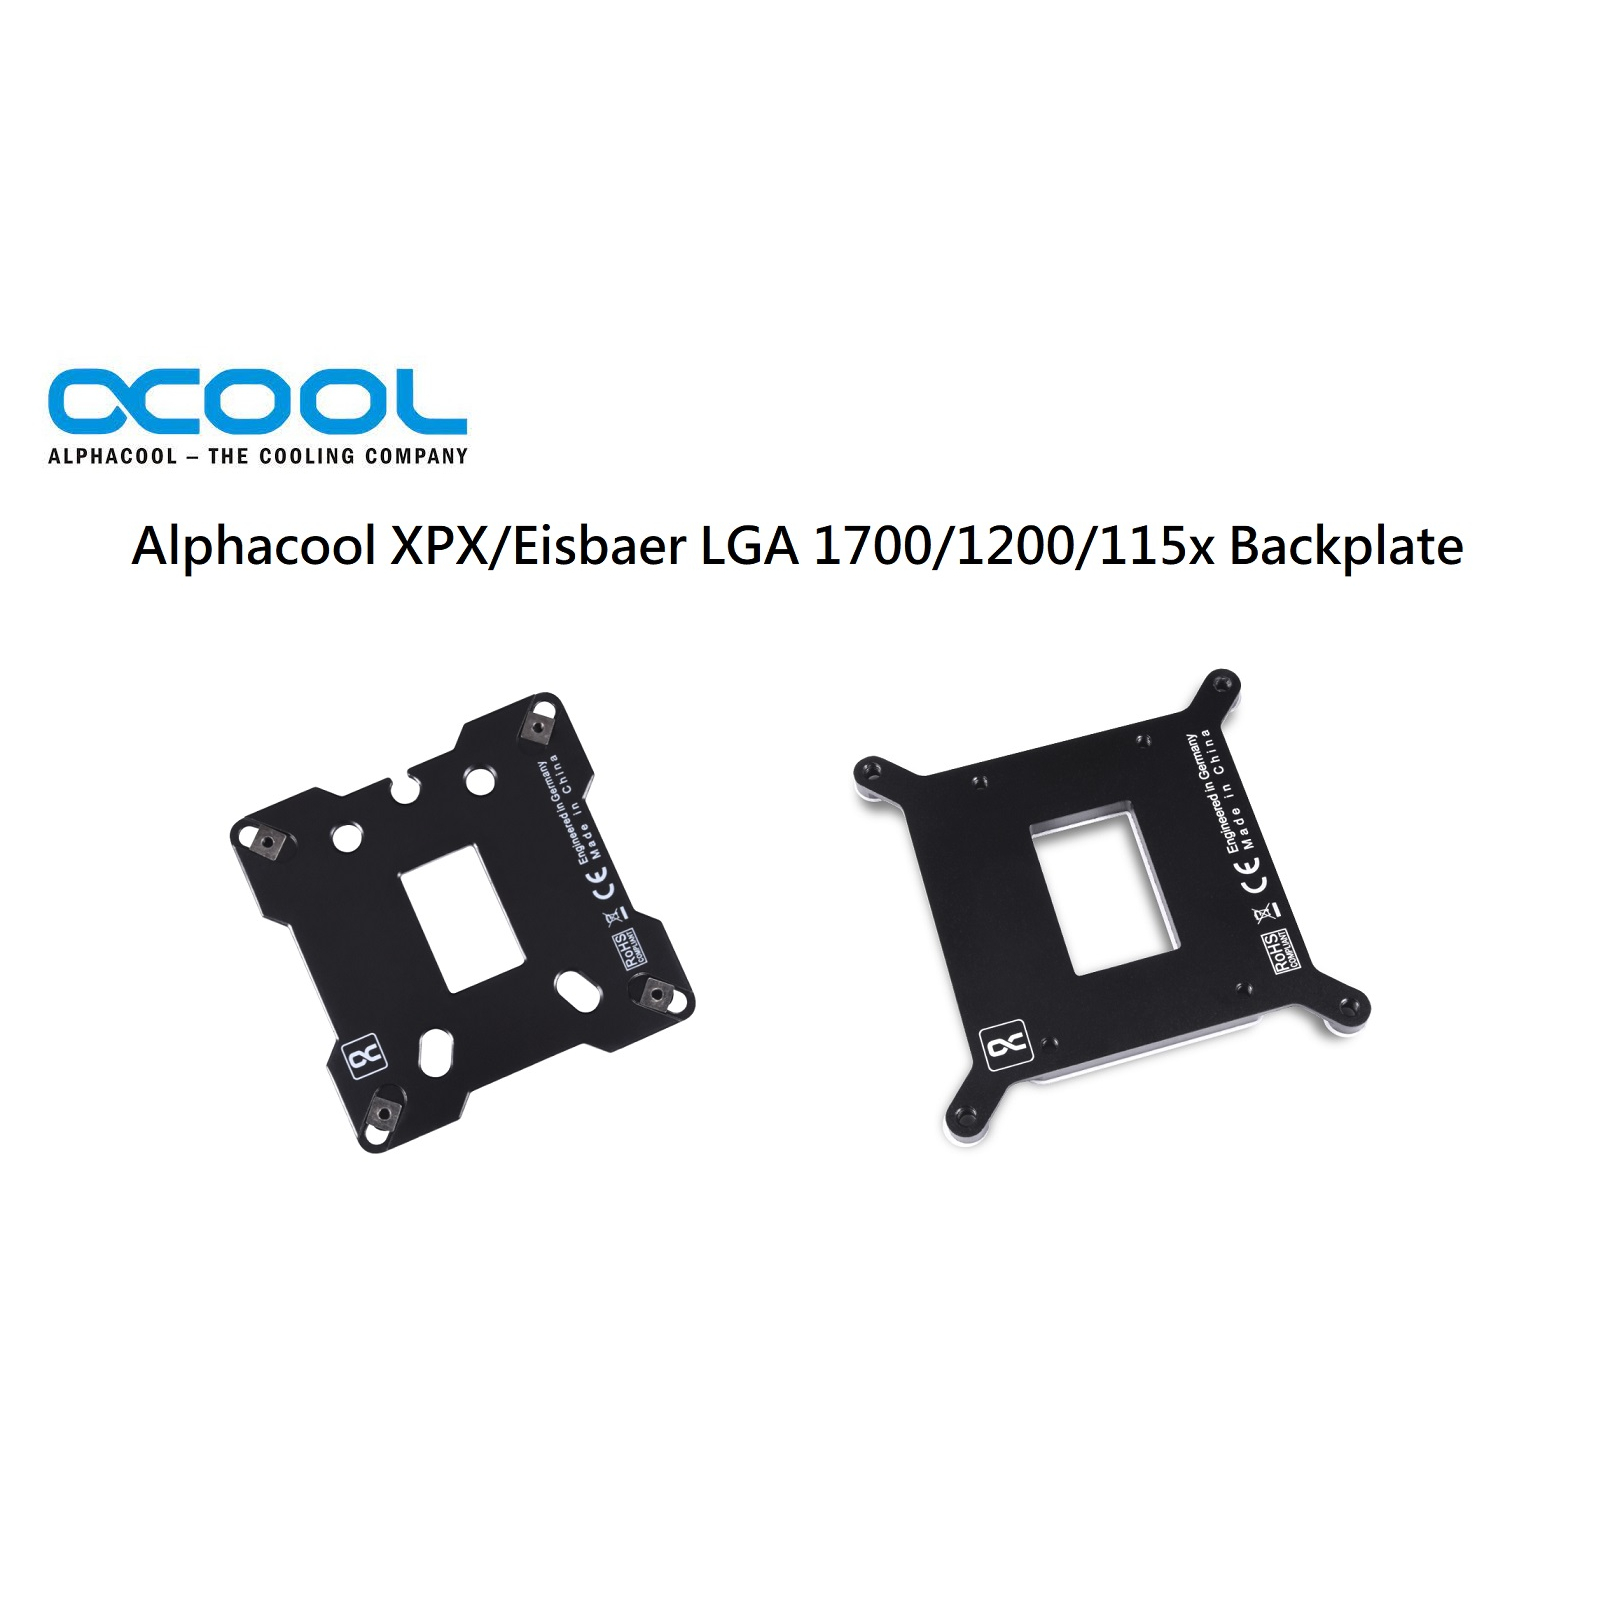 【肯瑞PC特裝】Alphacool  XPX/Eisbaer LGA 115X/1200/1700 專用背板